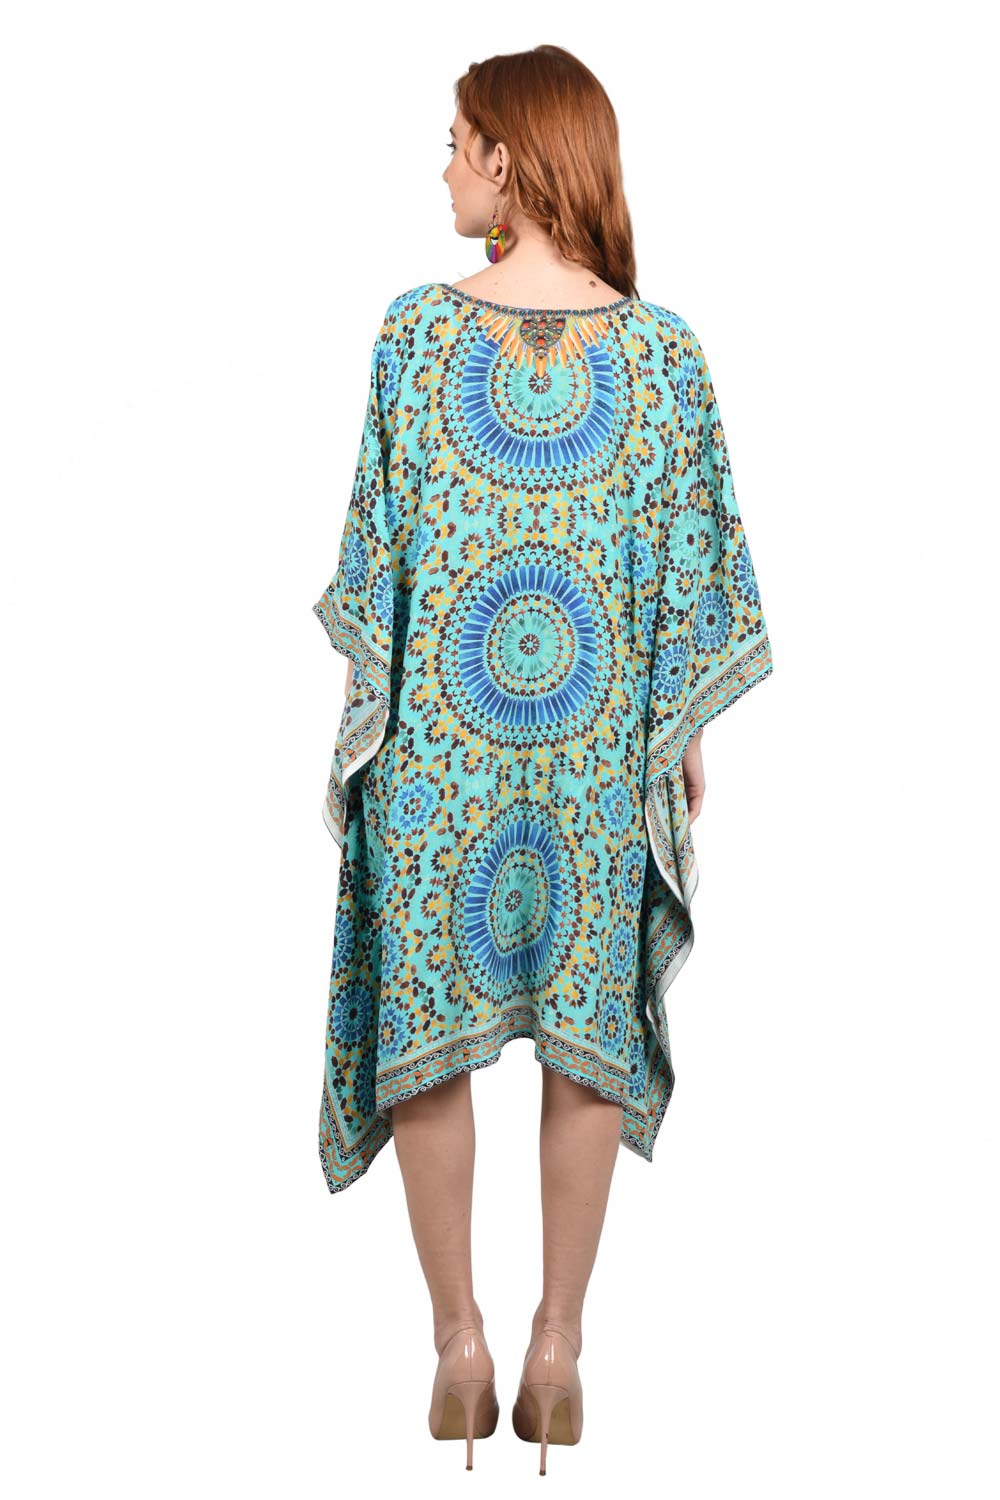 Cyan Mandala Short Kaftan with Decorative Neck and borders - Kaftan Dress